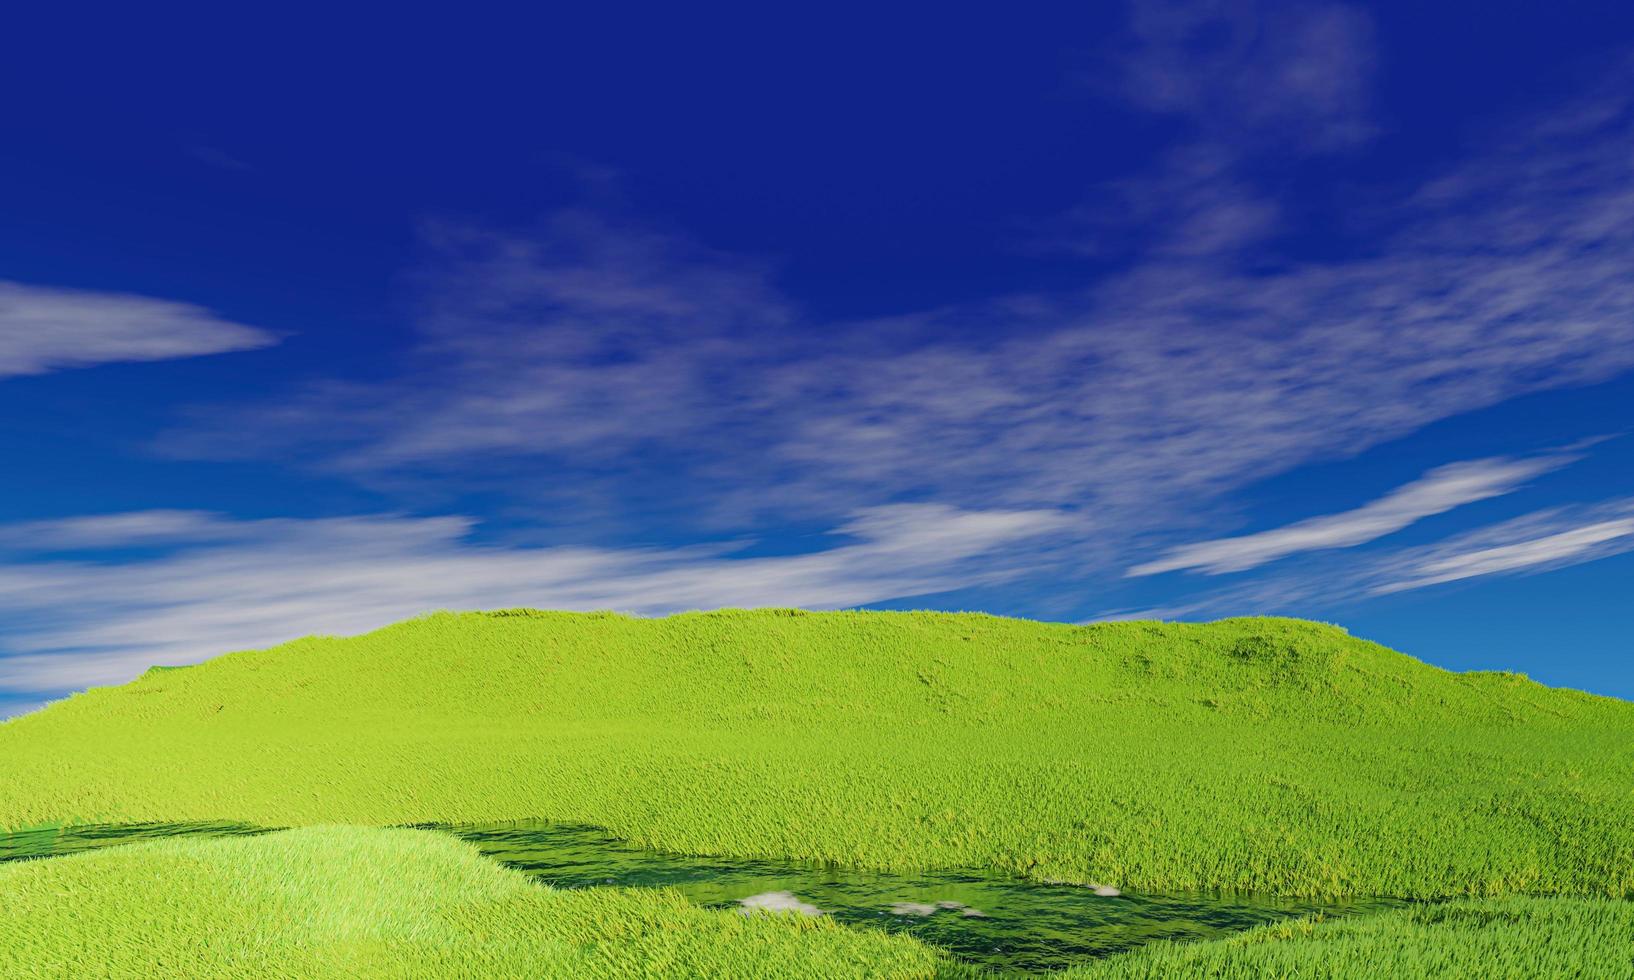 blauwe lucht en mooie wolk met weide en zonneschijn. effen landschapsachtergrond voor zomerposter. het beste uitzicht voor vakantie. foto van groen grasveld en blauwe lucht met witte wolken